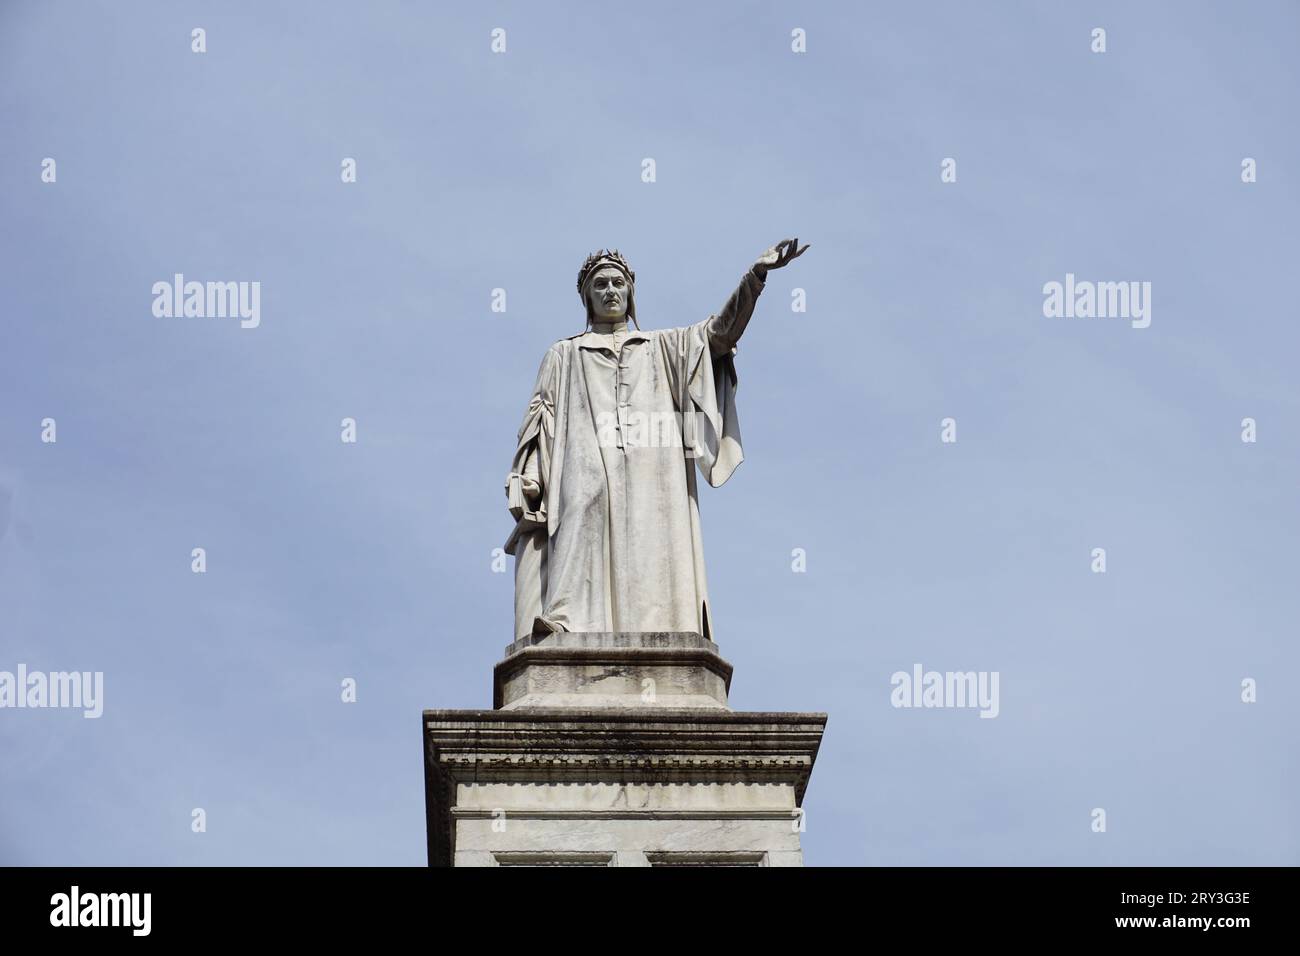 Neapel, Italien, 13. Juni 2023. Die Statue von Dante Alighieri ist ein Denkmal in der italienischen Stadt Neapel, der Hauptstadt Kampaniens Stockfoto